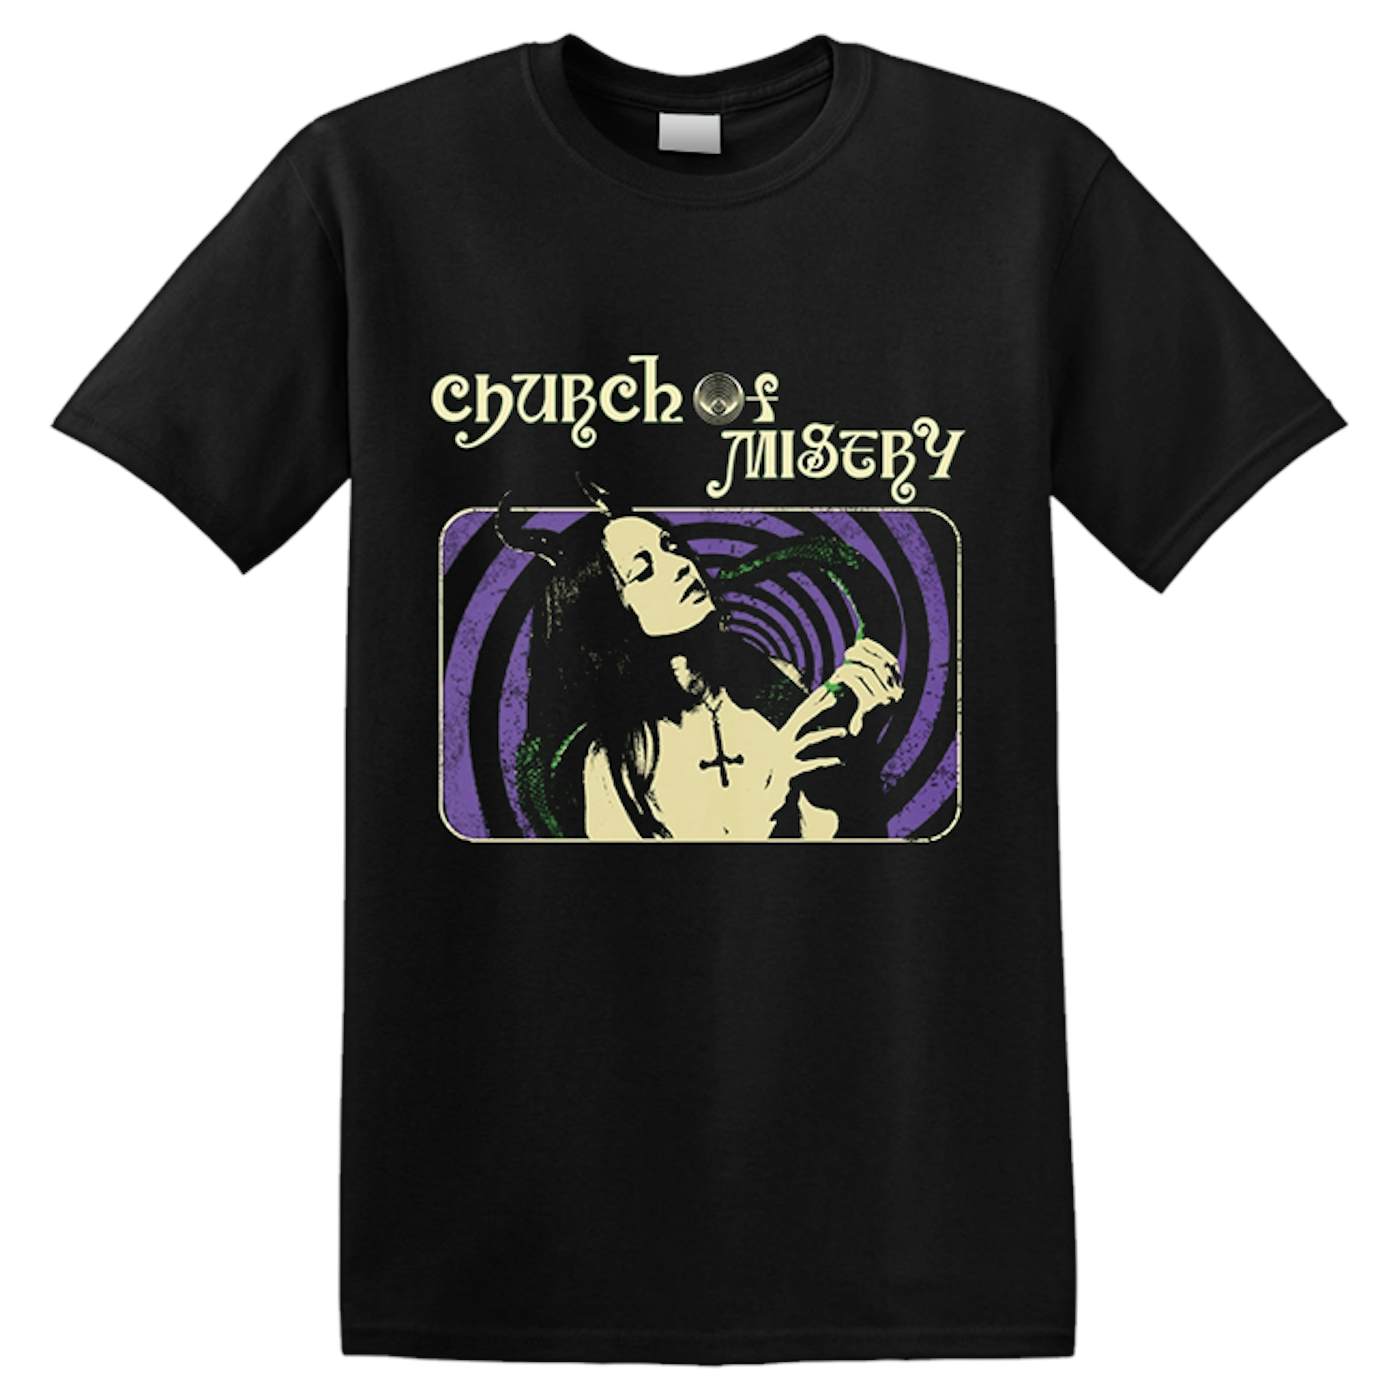 CHURCH OF MISERY - 'Snake Girl' T-Shirt